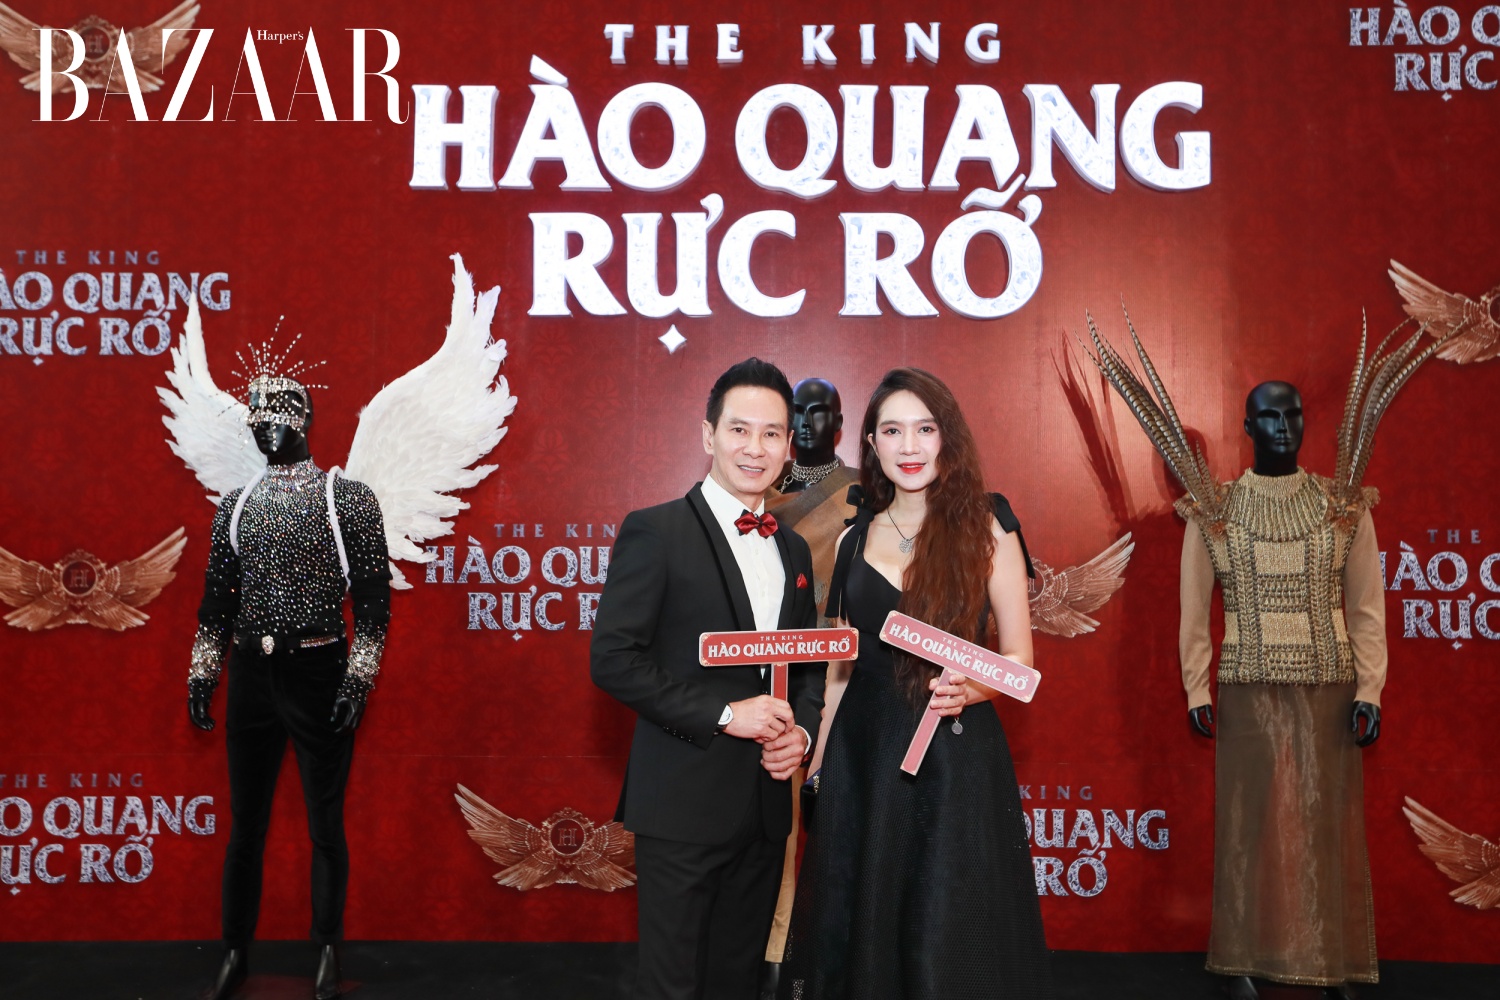 Vợ chồng Lý Hải – Minh Hà tại lễ ra mắt Hào quang rực rỡ – The King 